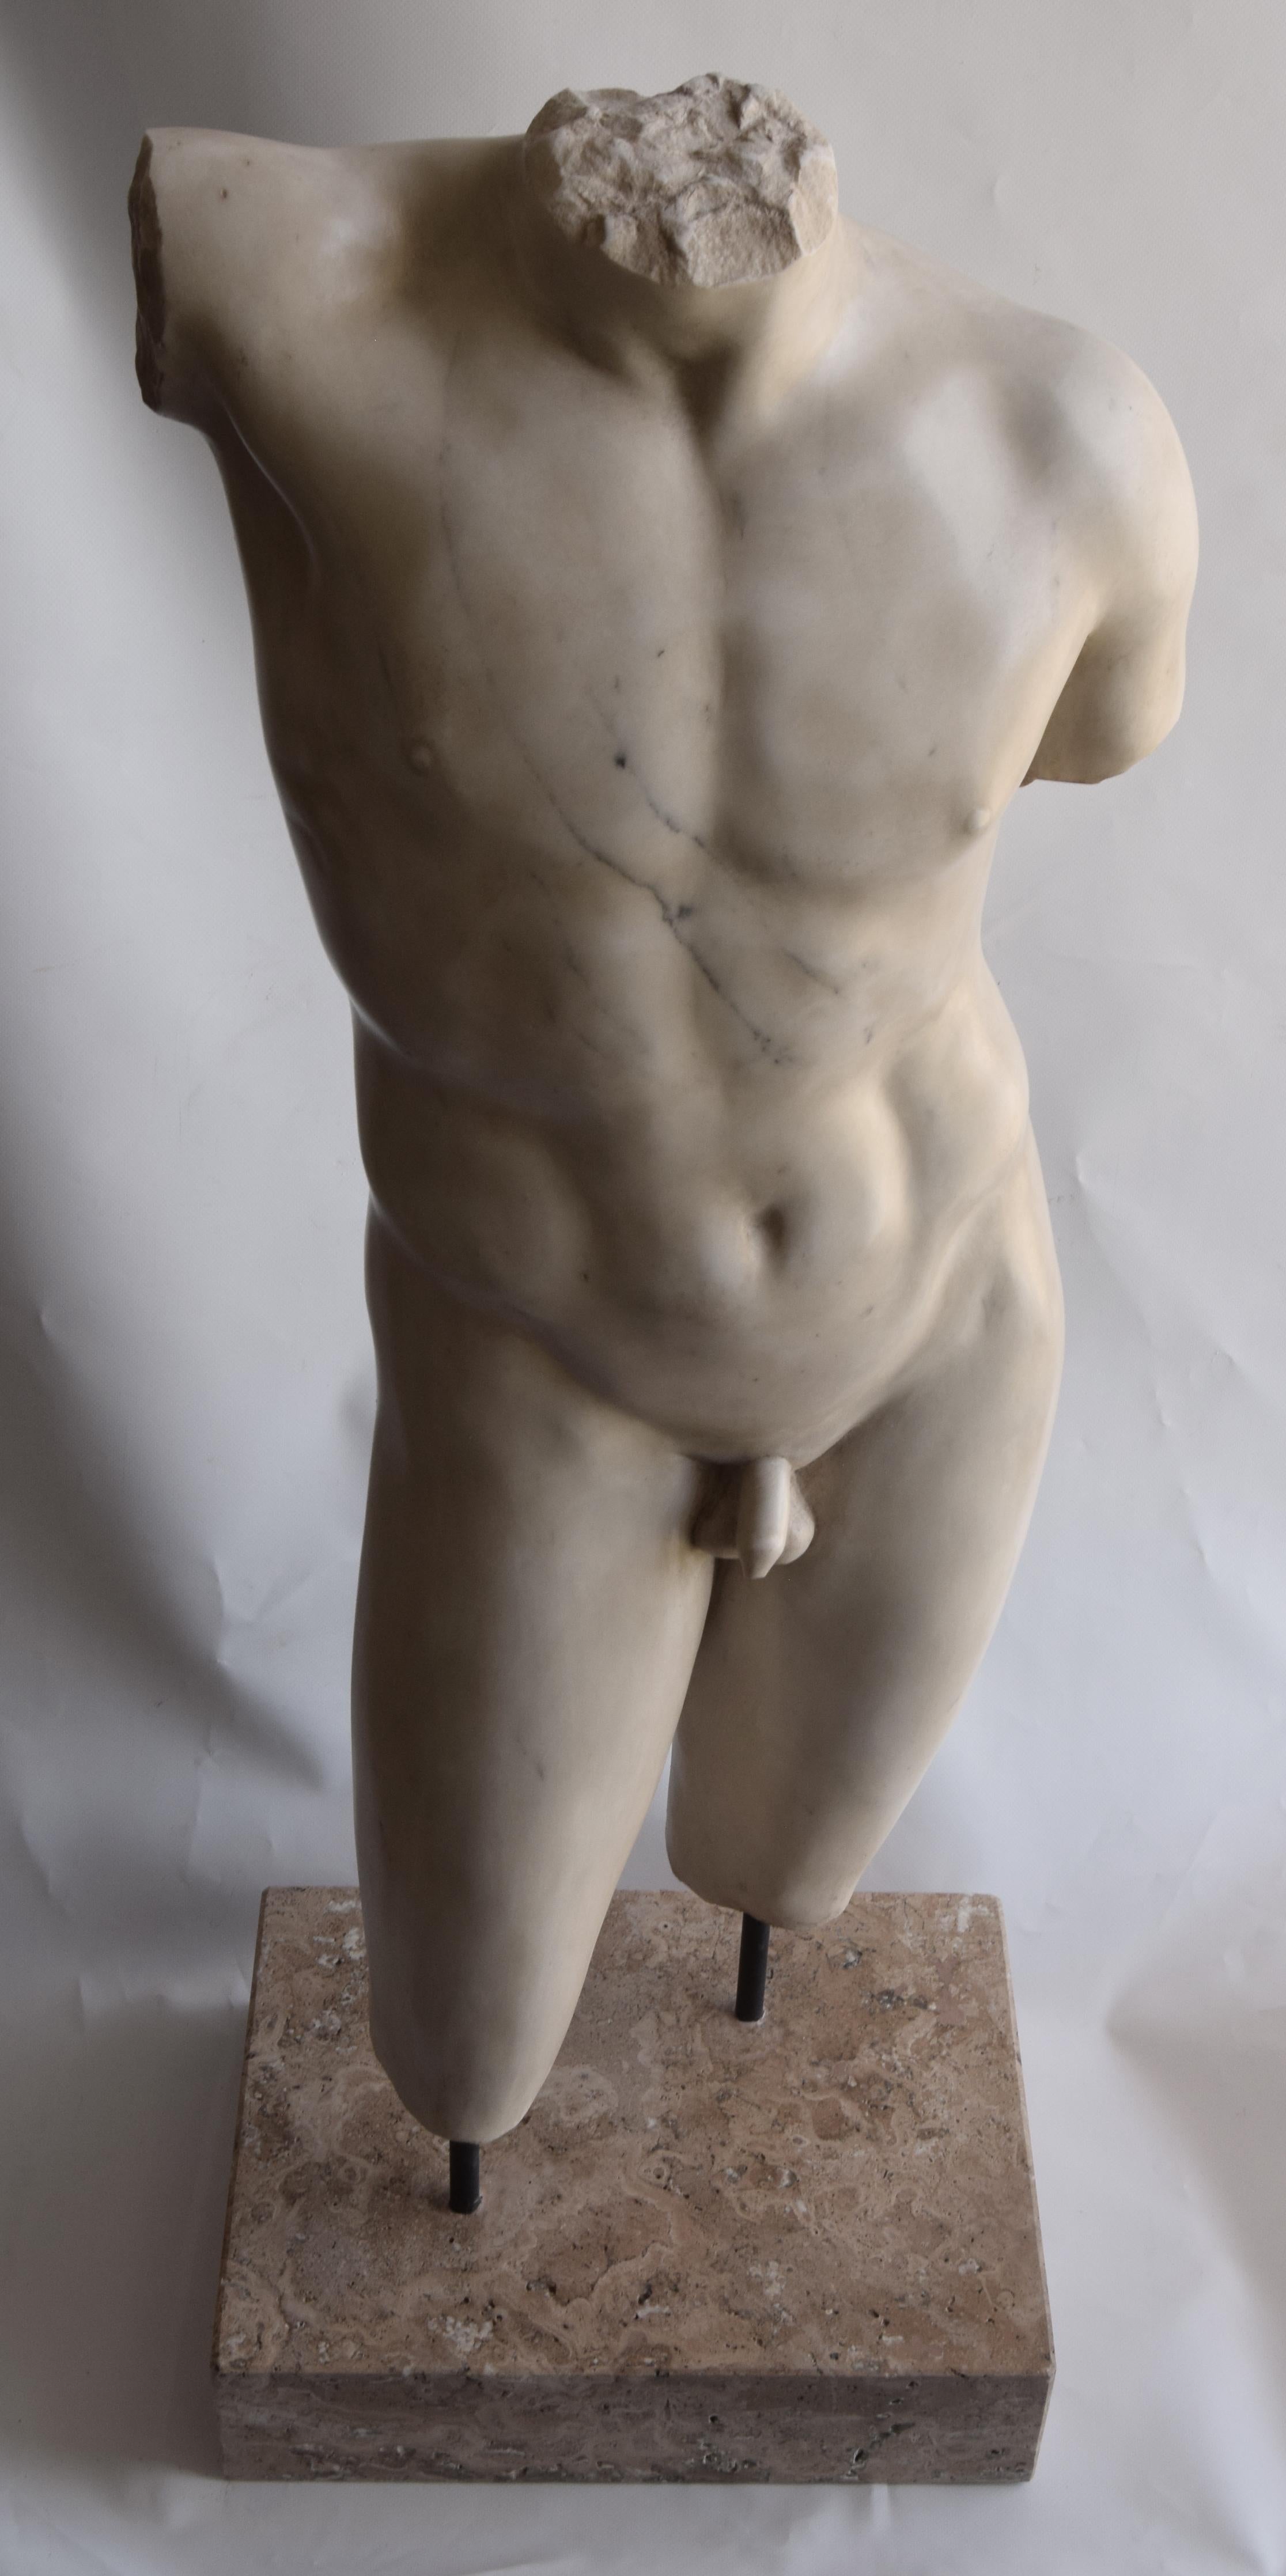 Hellenistic Torso maschile in stile Grecia classica scolpito su marmo bianco di Carrara For Sale